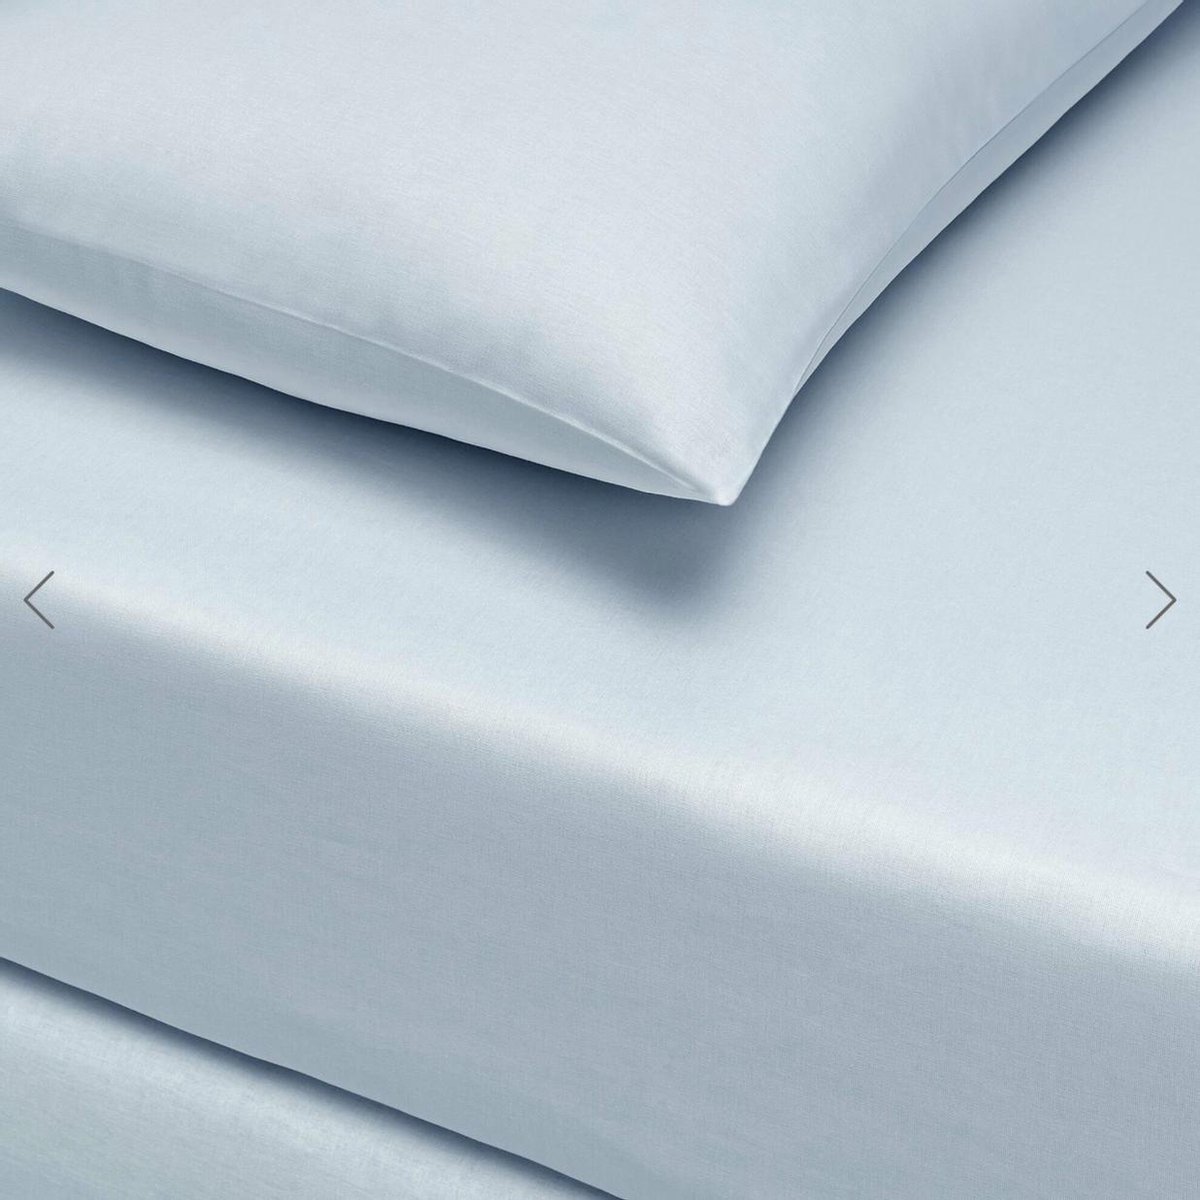 Linens - Basic Hoeslakenset (laken + 2 kussenslopen) Super King - 180x200 cm - %100 Cotton - Light Blue